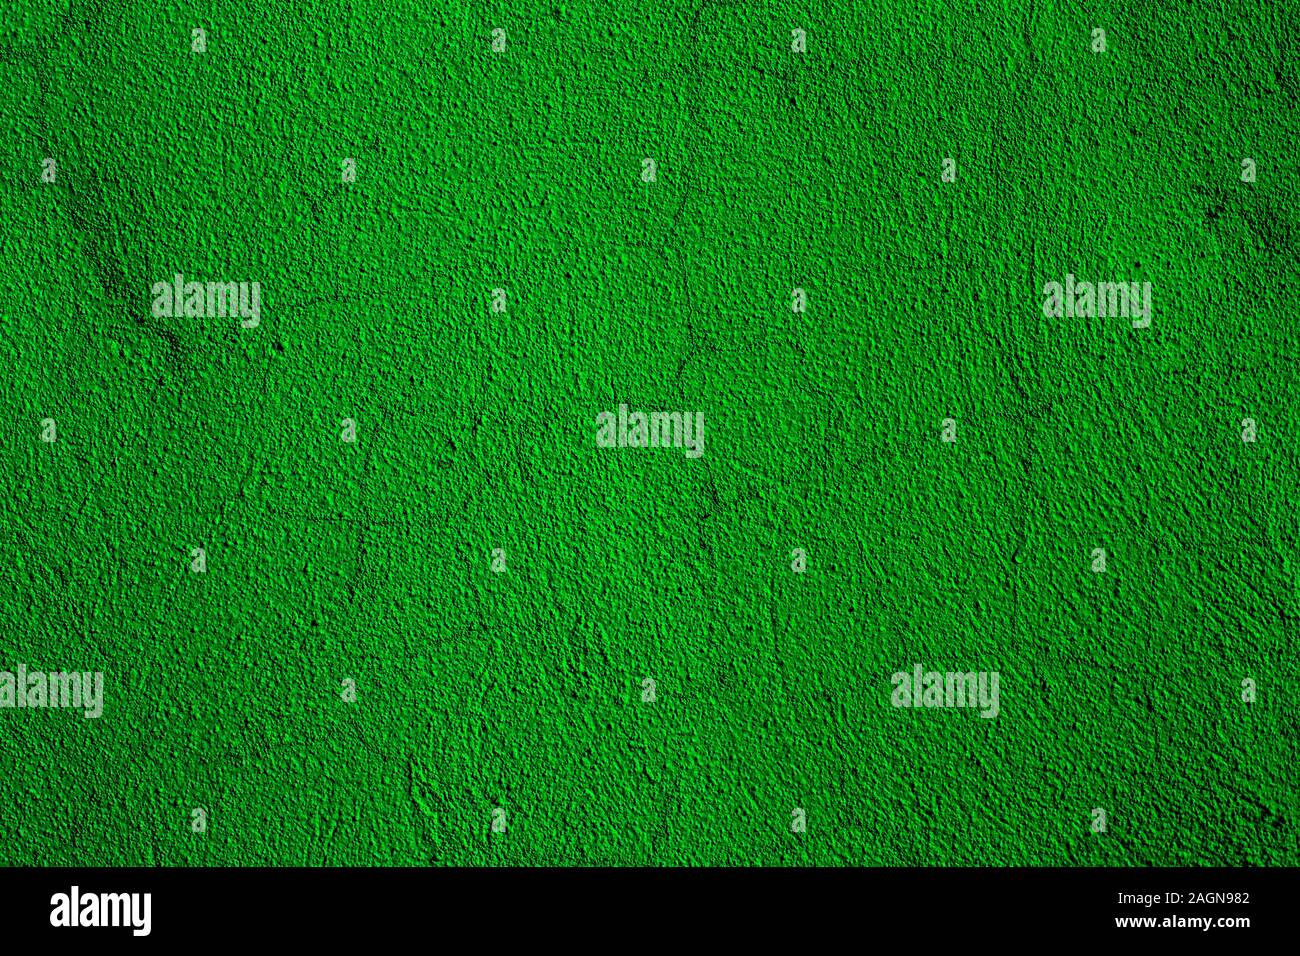 Arrière-plan de couleur verte avec des textures de différentes nuances de vert Banque D'Images